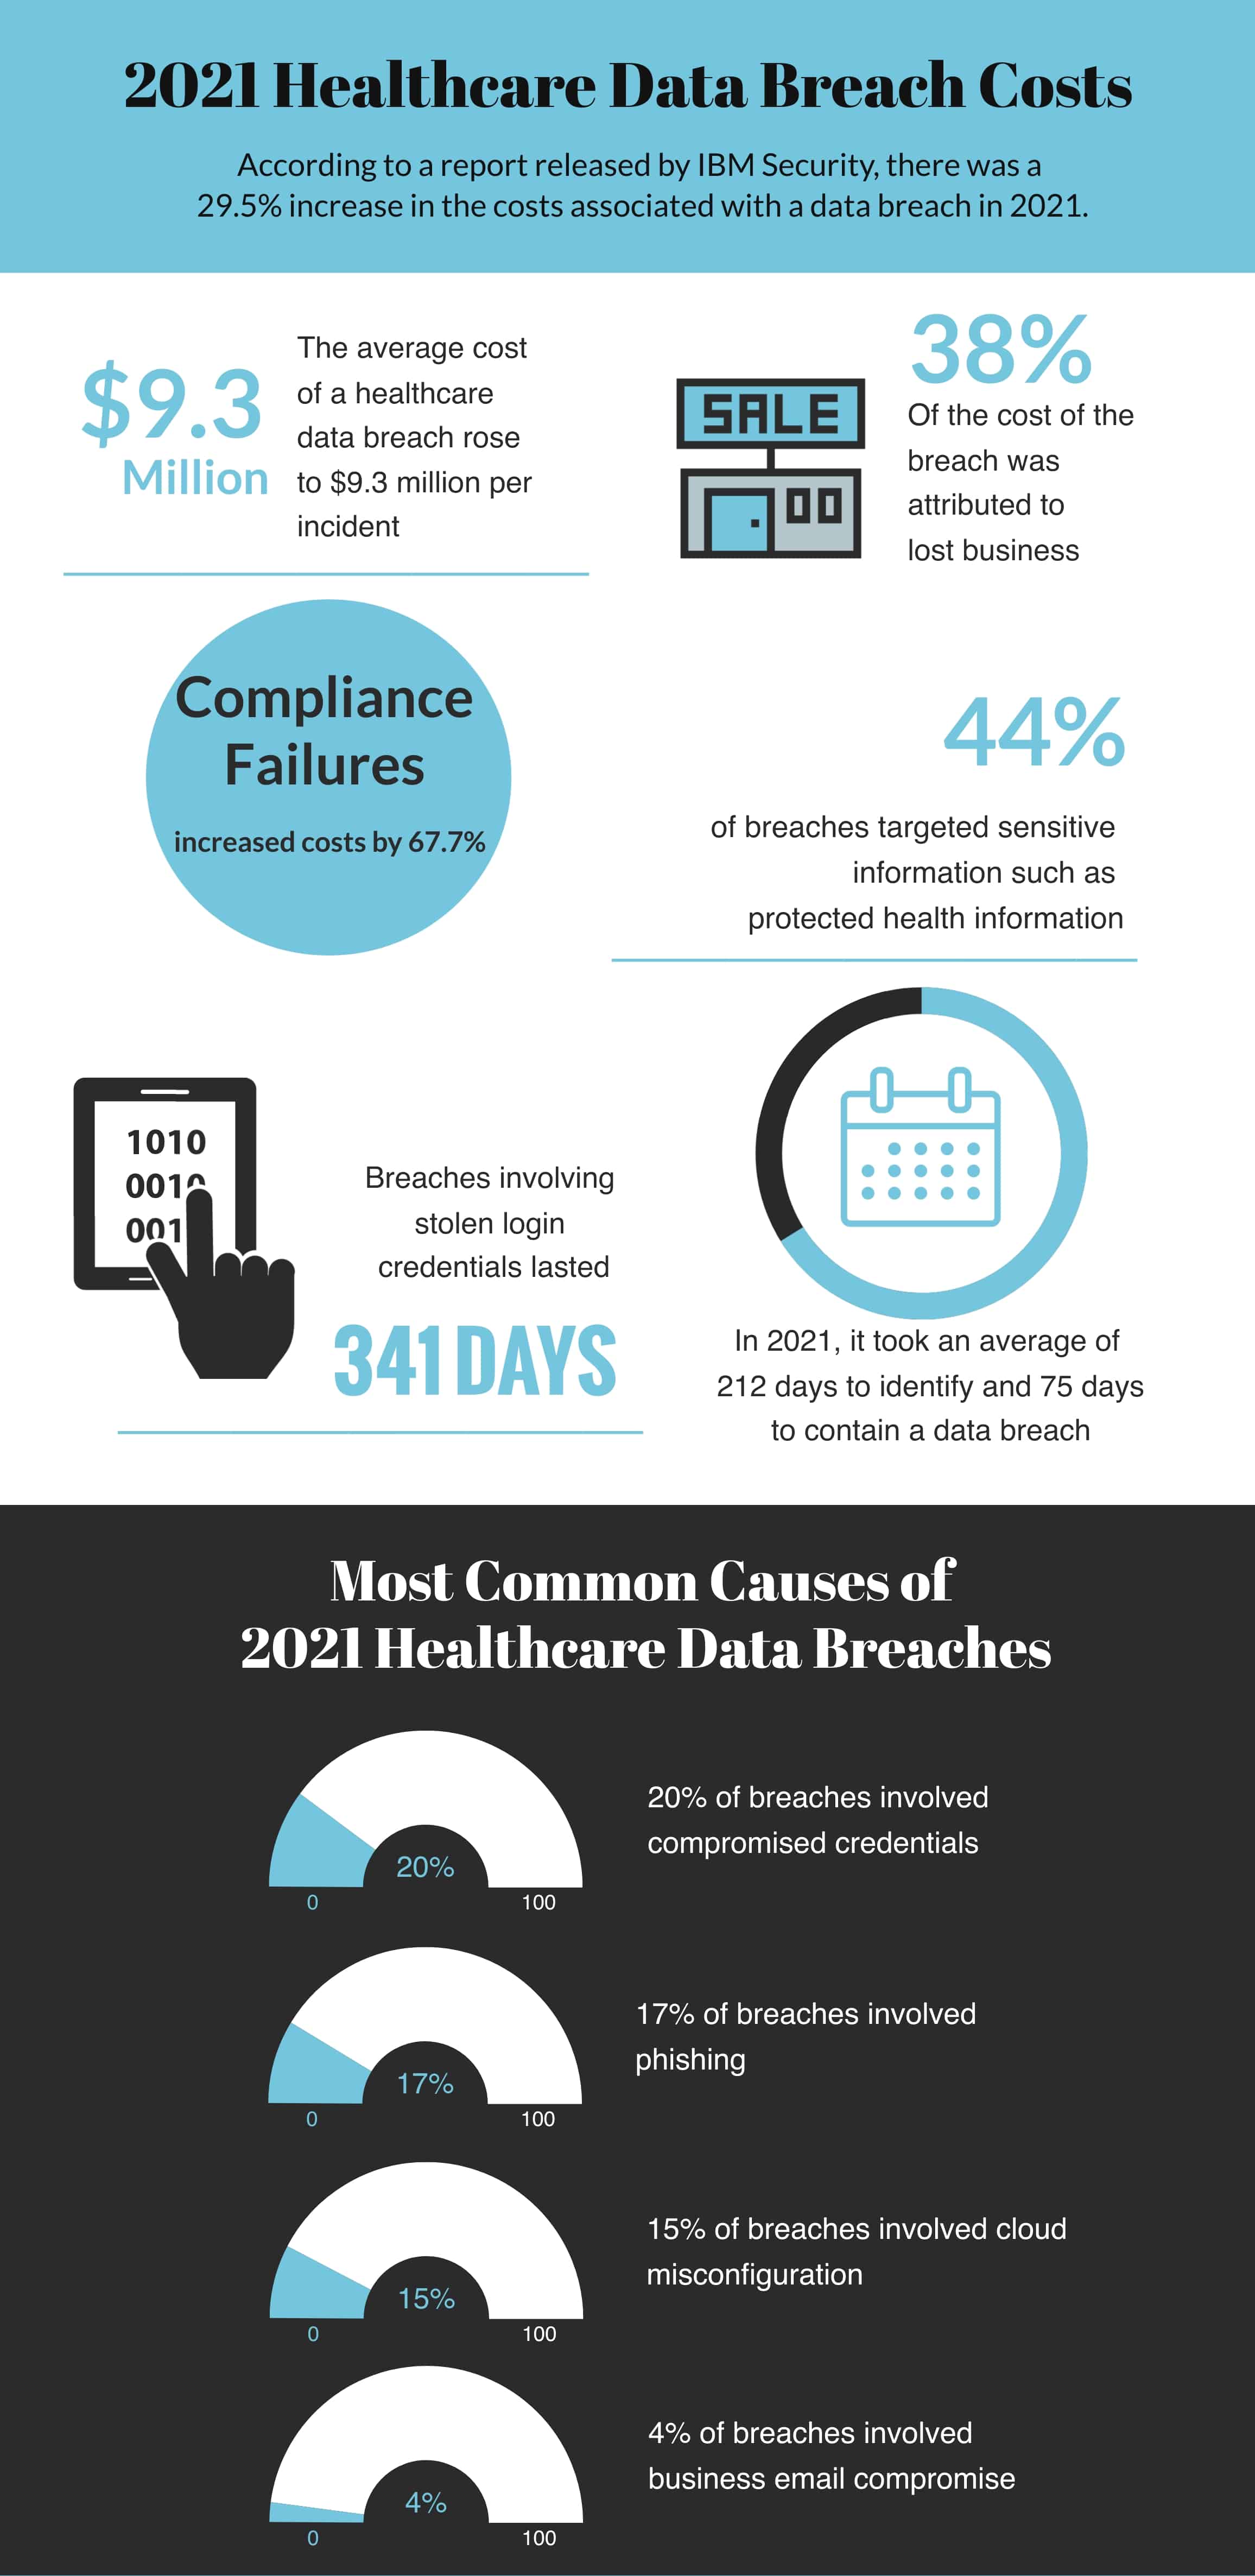 2021 Cost of Healthcare Data Breach 9.3 Million